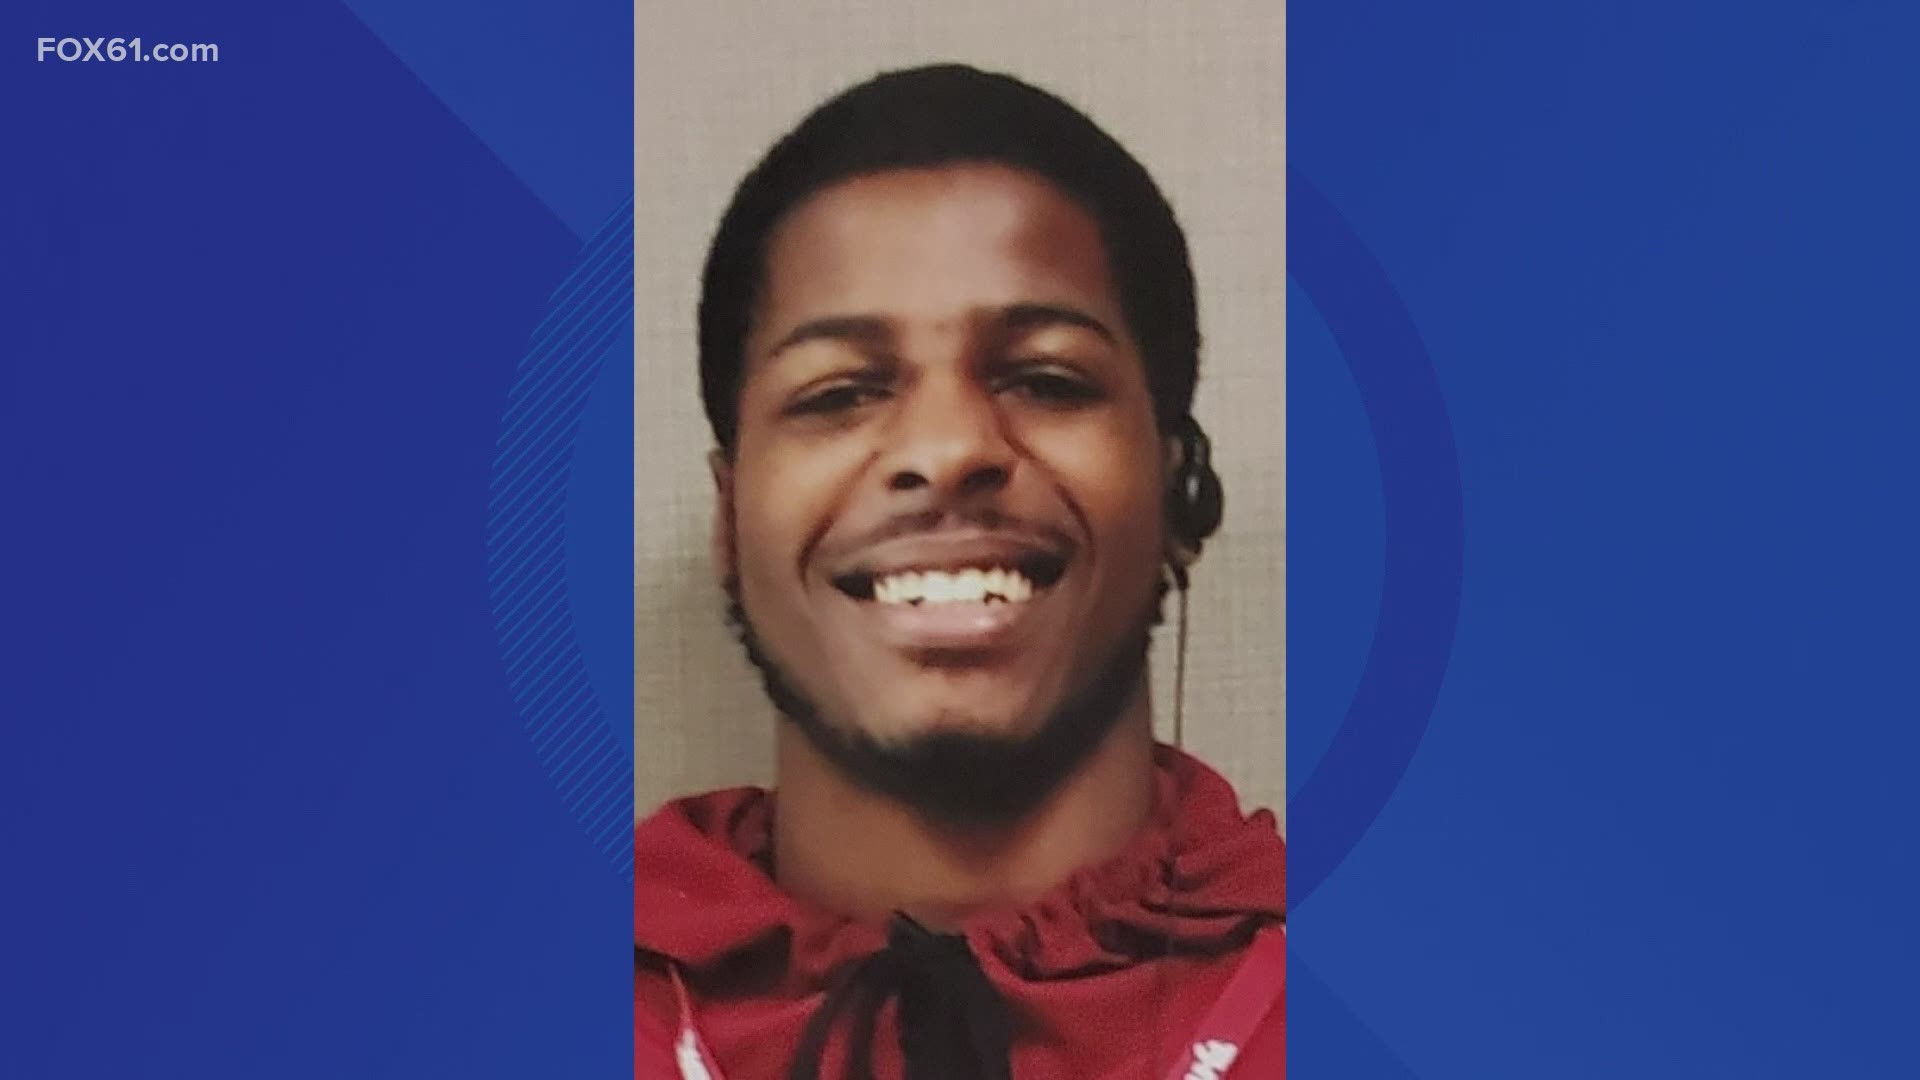 Dennis Allen-Paige, 21, was killed walking home from work